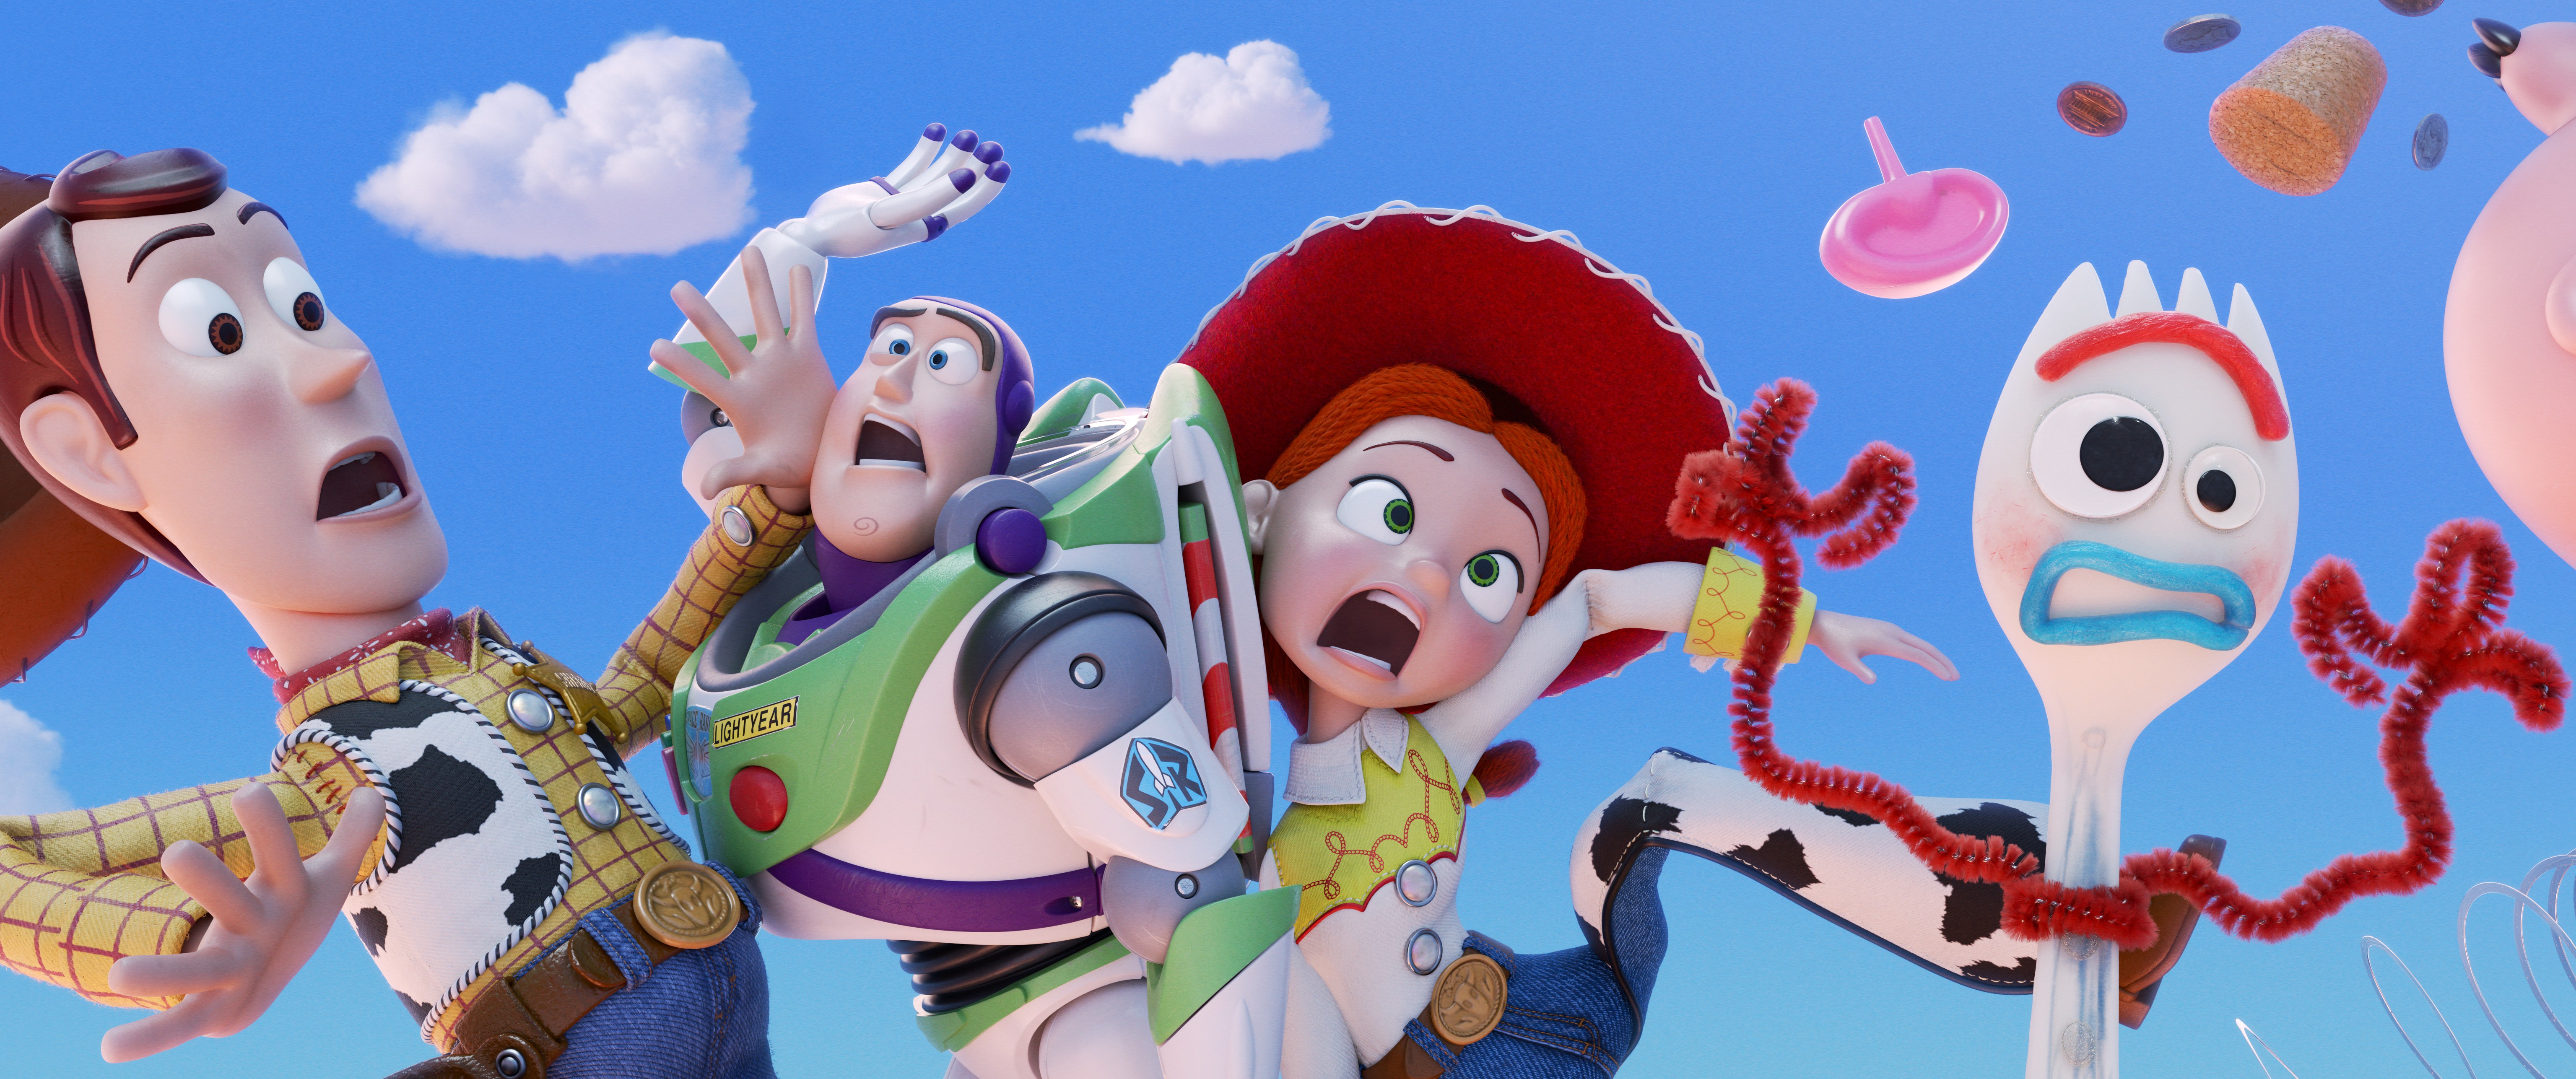 Cena de Toy Story 4 (Foto: Divulgação)